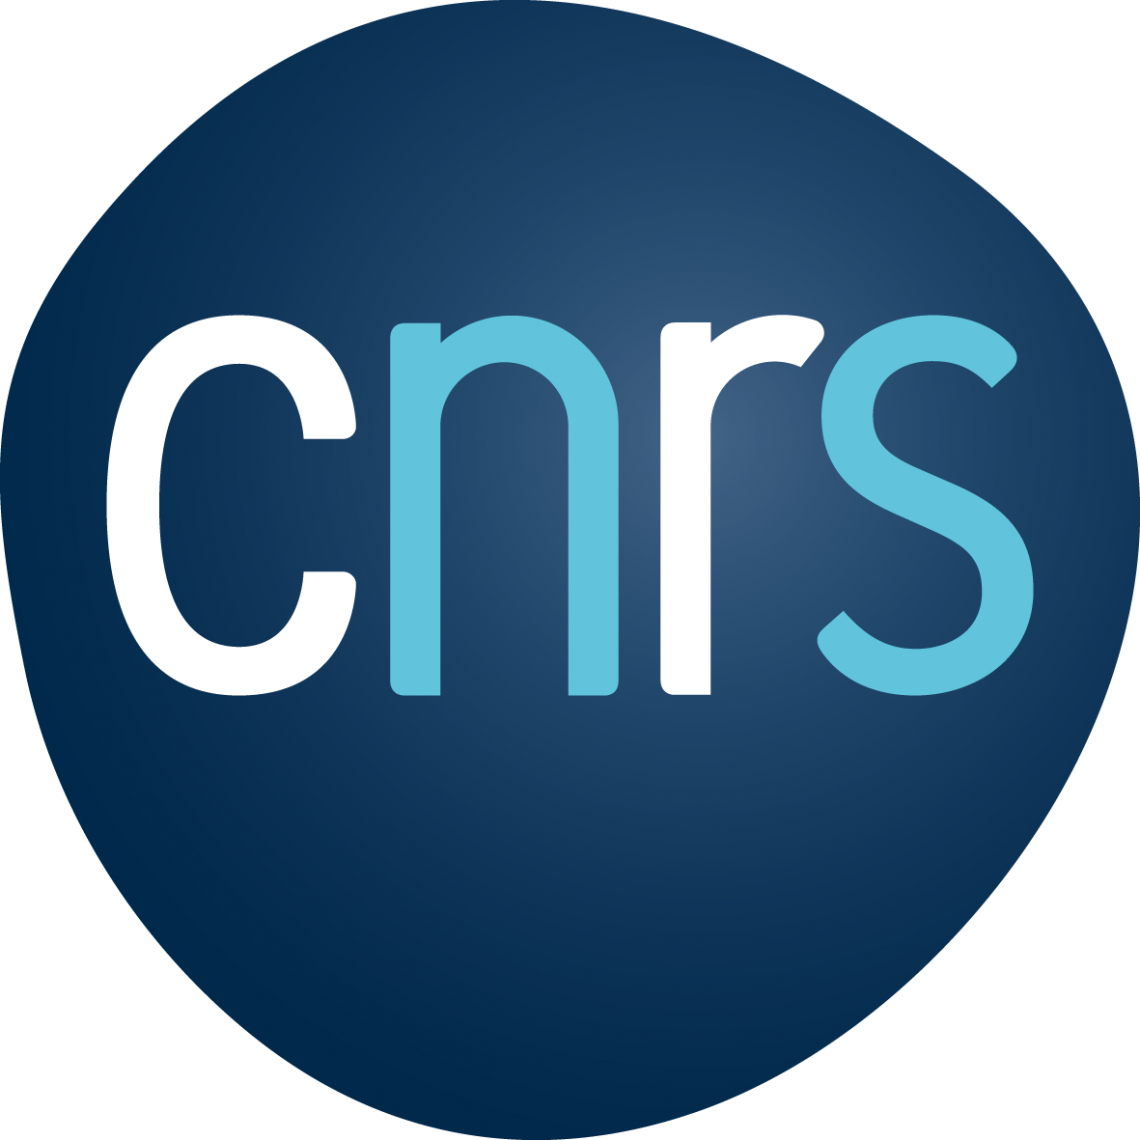 Concours Chercheur.e.s CNRS 2021